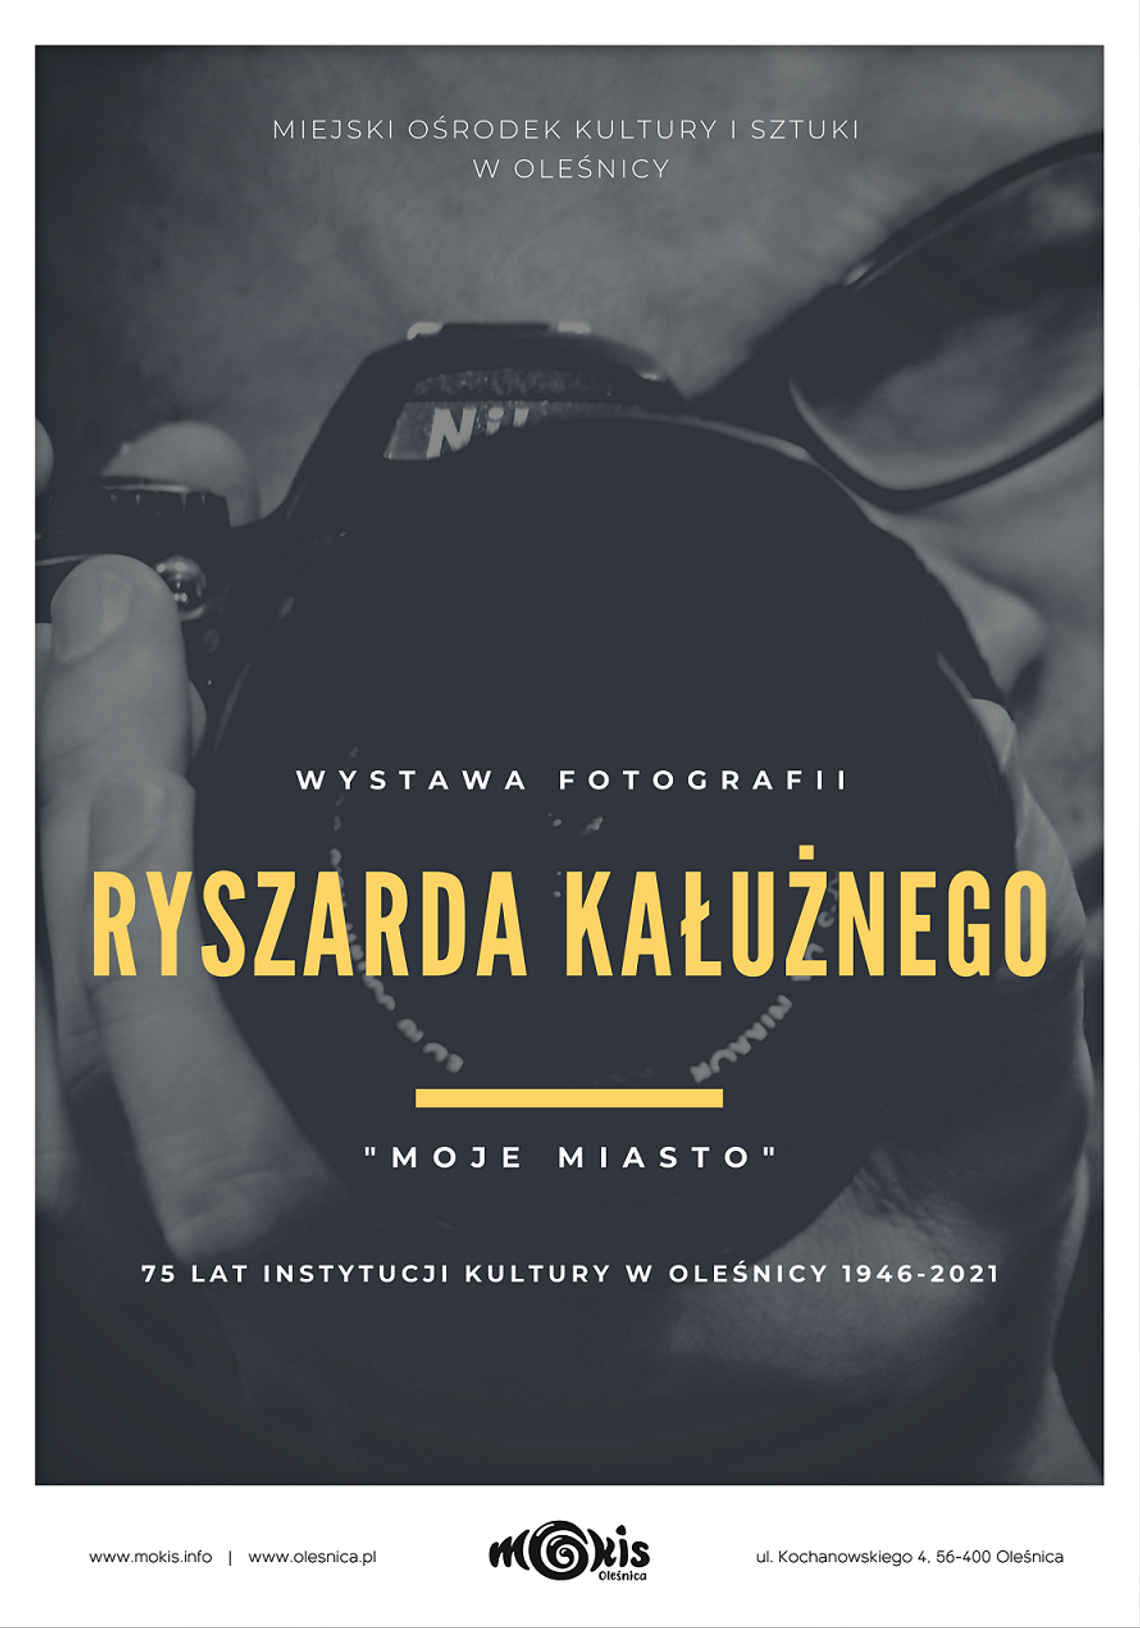 Wystawa fotografii Ryszarda Kałużnego ,,Moje miasto" w Oleśnicy